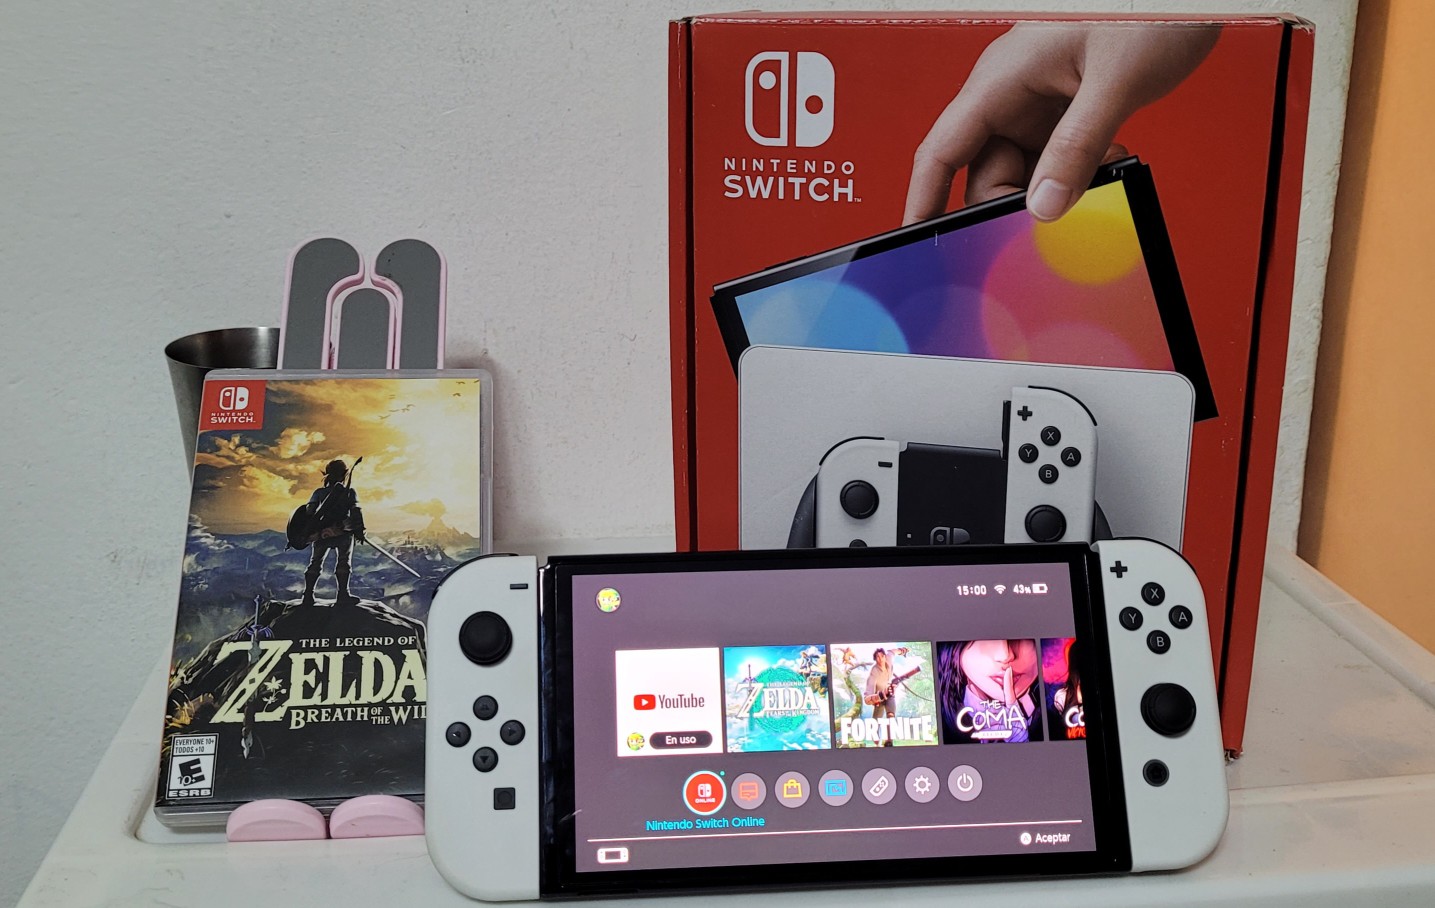 consolas y videojuegos - Nintendo Switch Oled Edicion zelda Con un juego 3